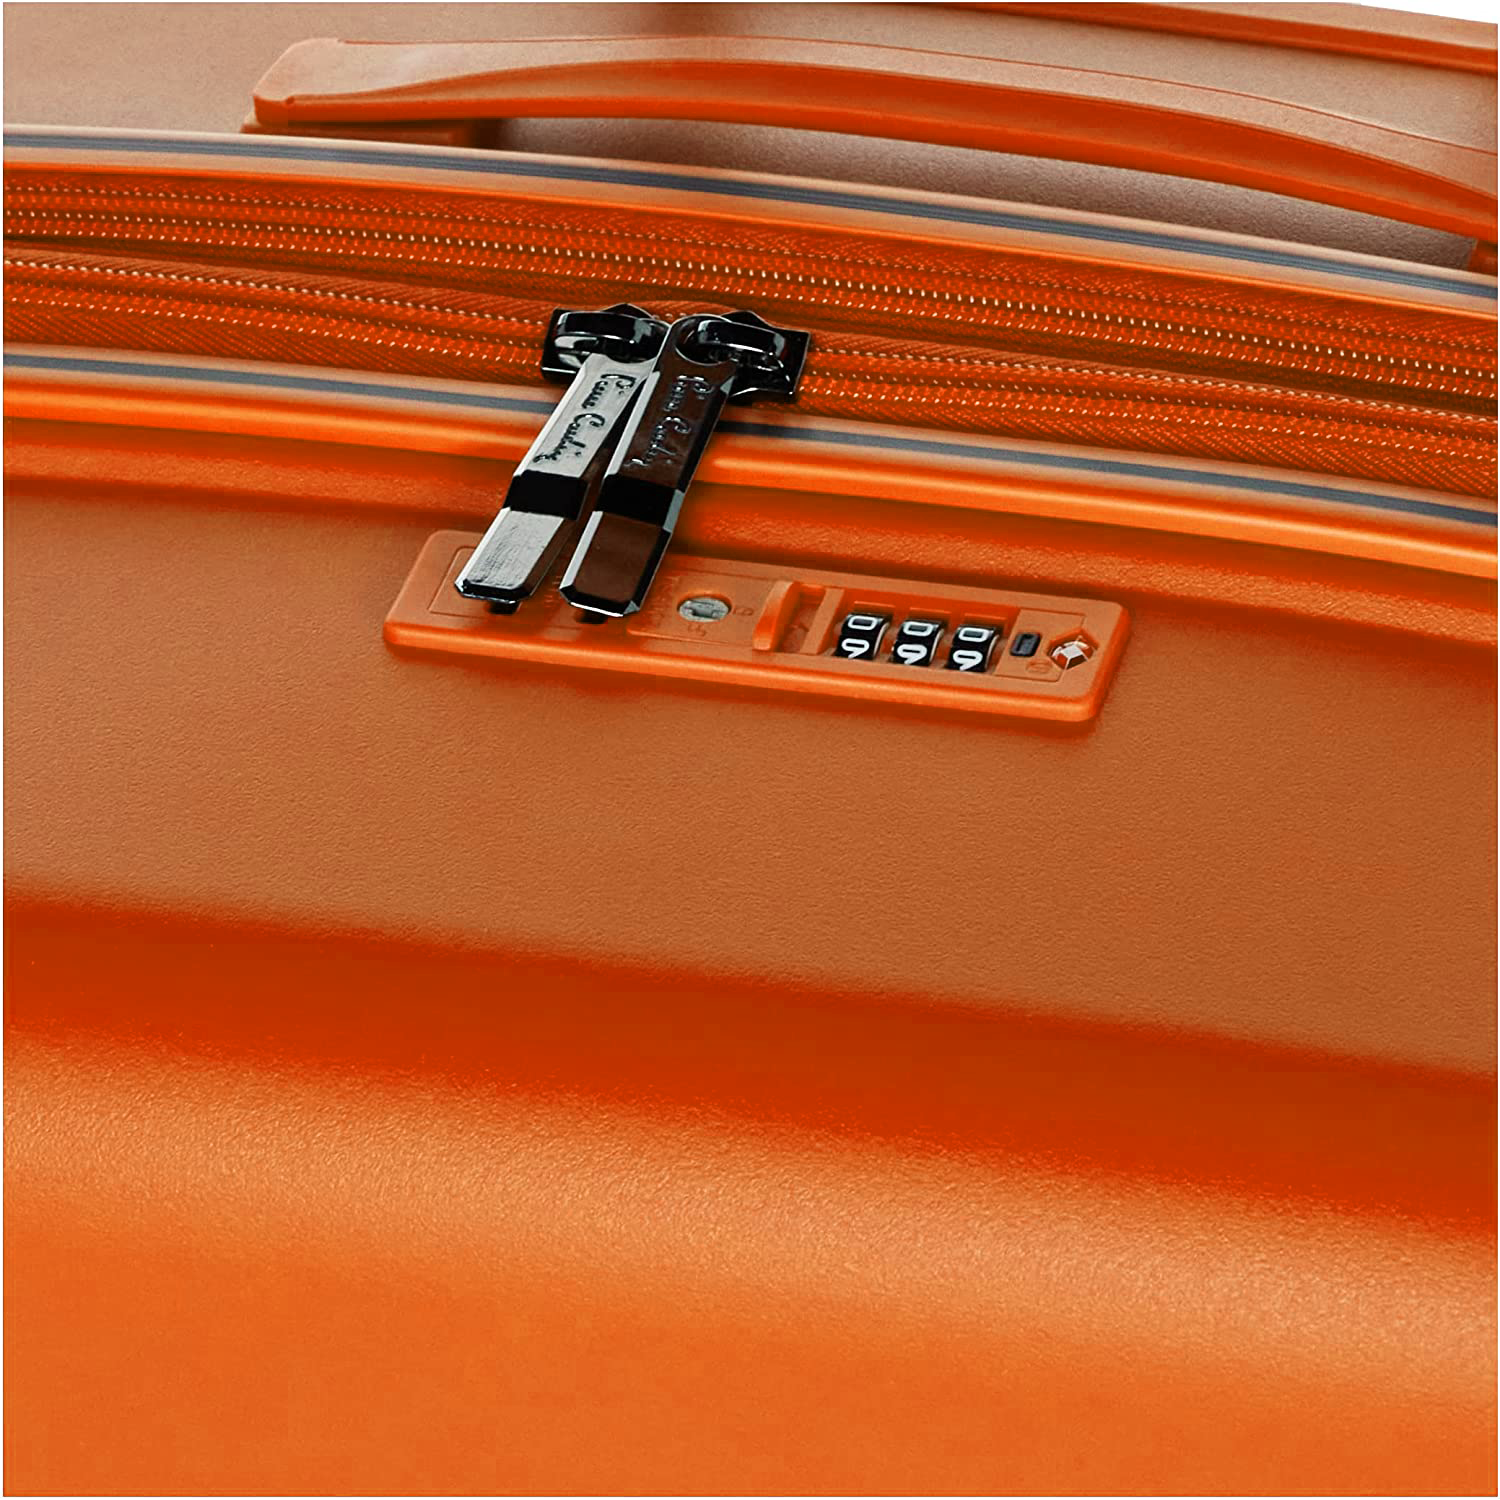 Pierre Cardin Zurich Collection Carry On - Orange